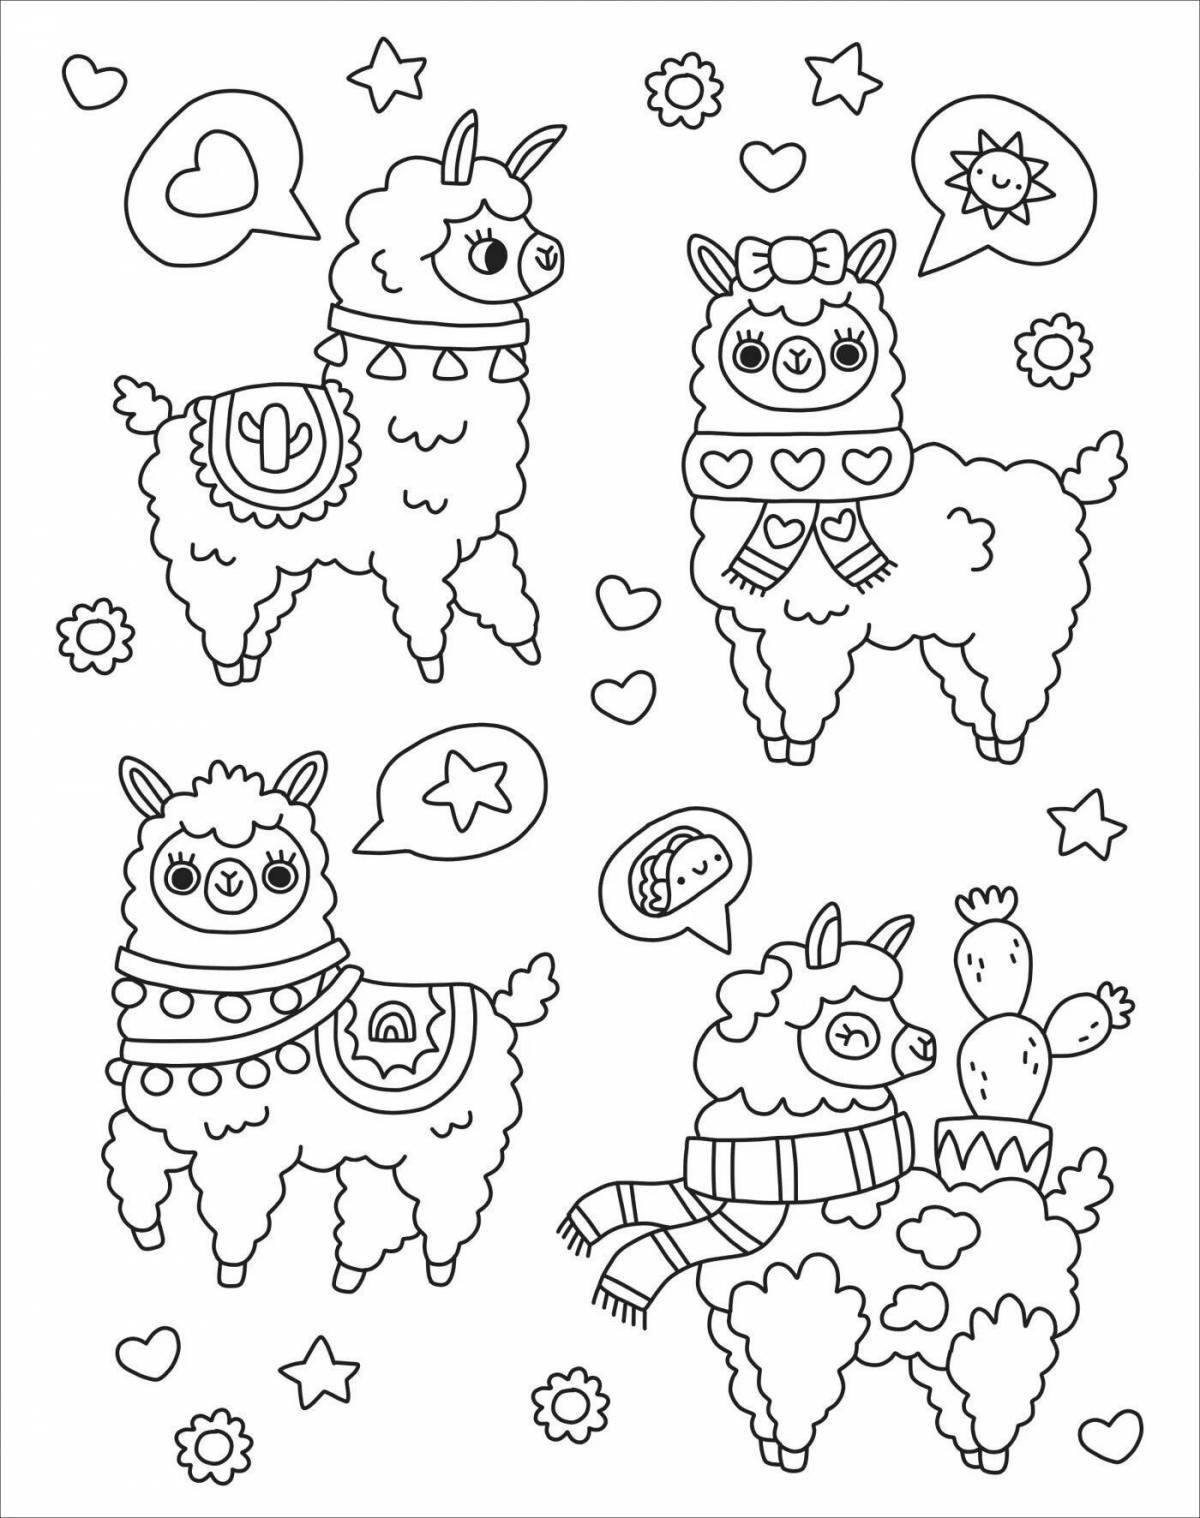 Live kawaii animal coloring page